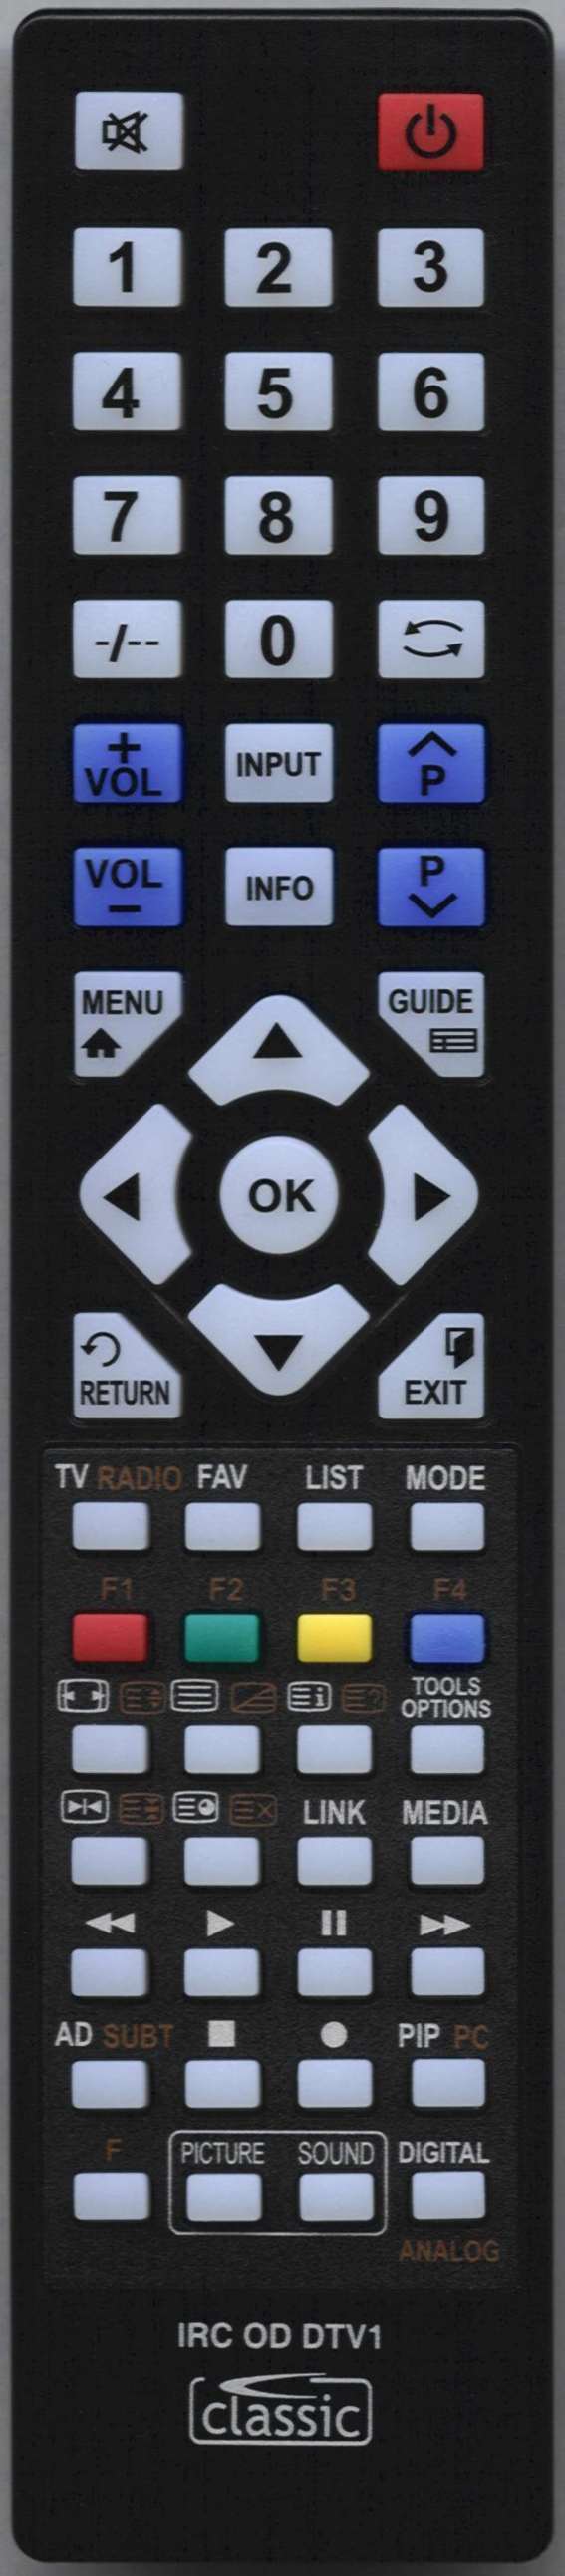 DGM CSP-OTH-XX1929RCG Remote Control